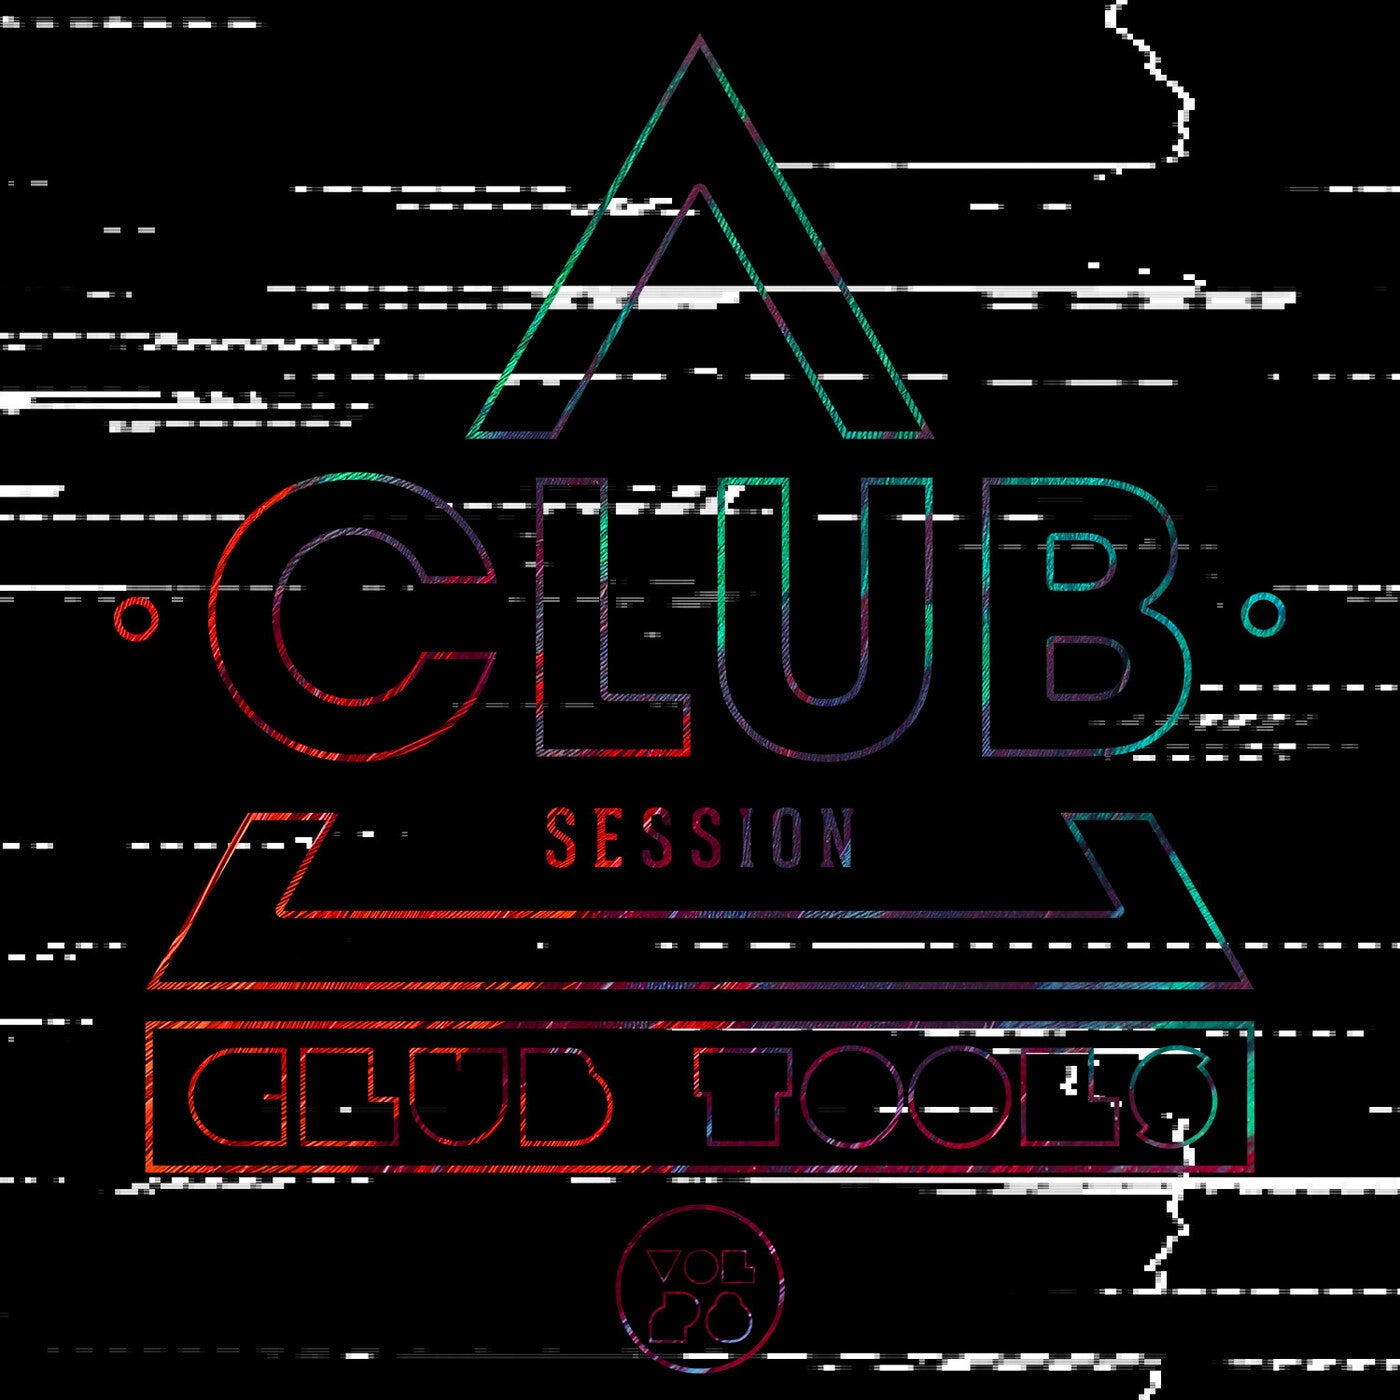 Club Session pres. Club Tools Vol. 28